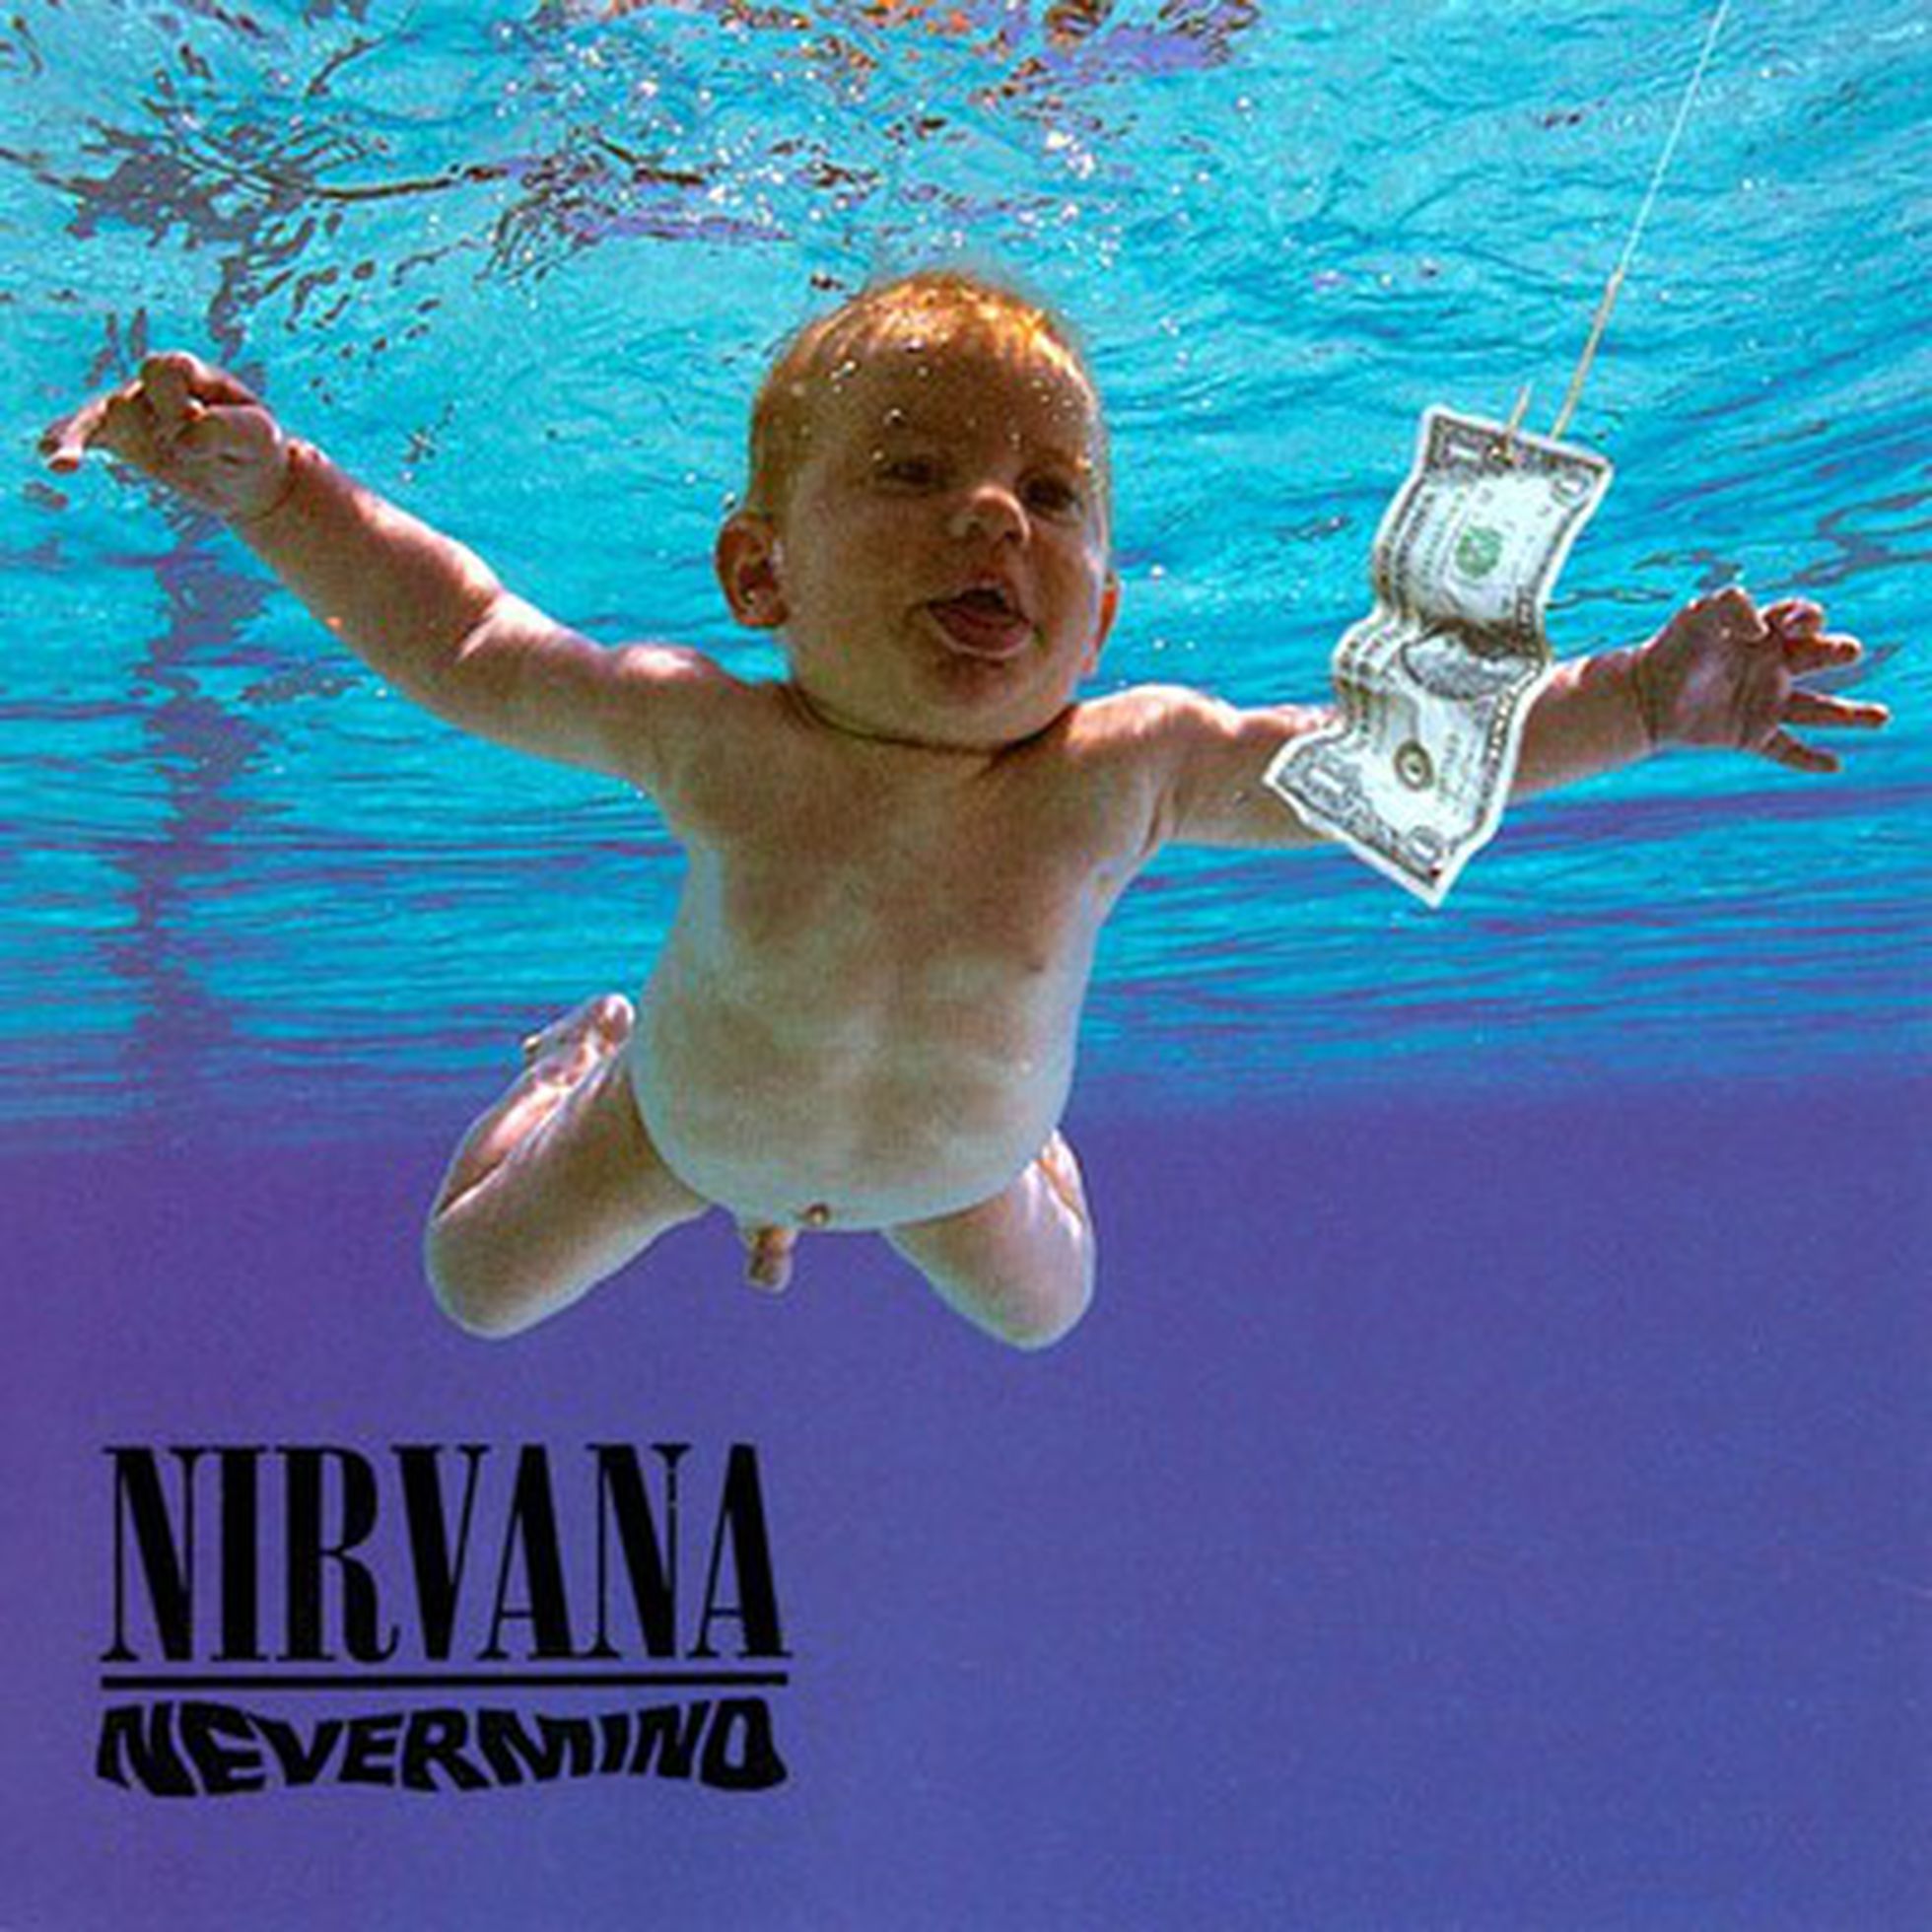 Cortesía. Portada del álbum de Nirvana 'Nevermind'.